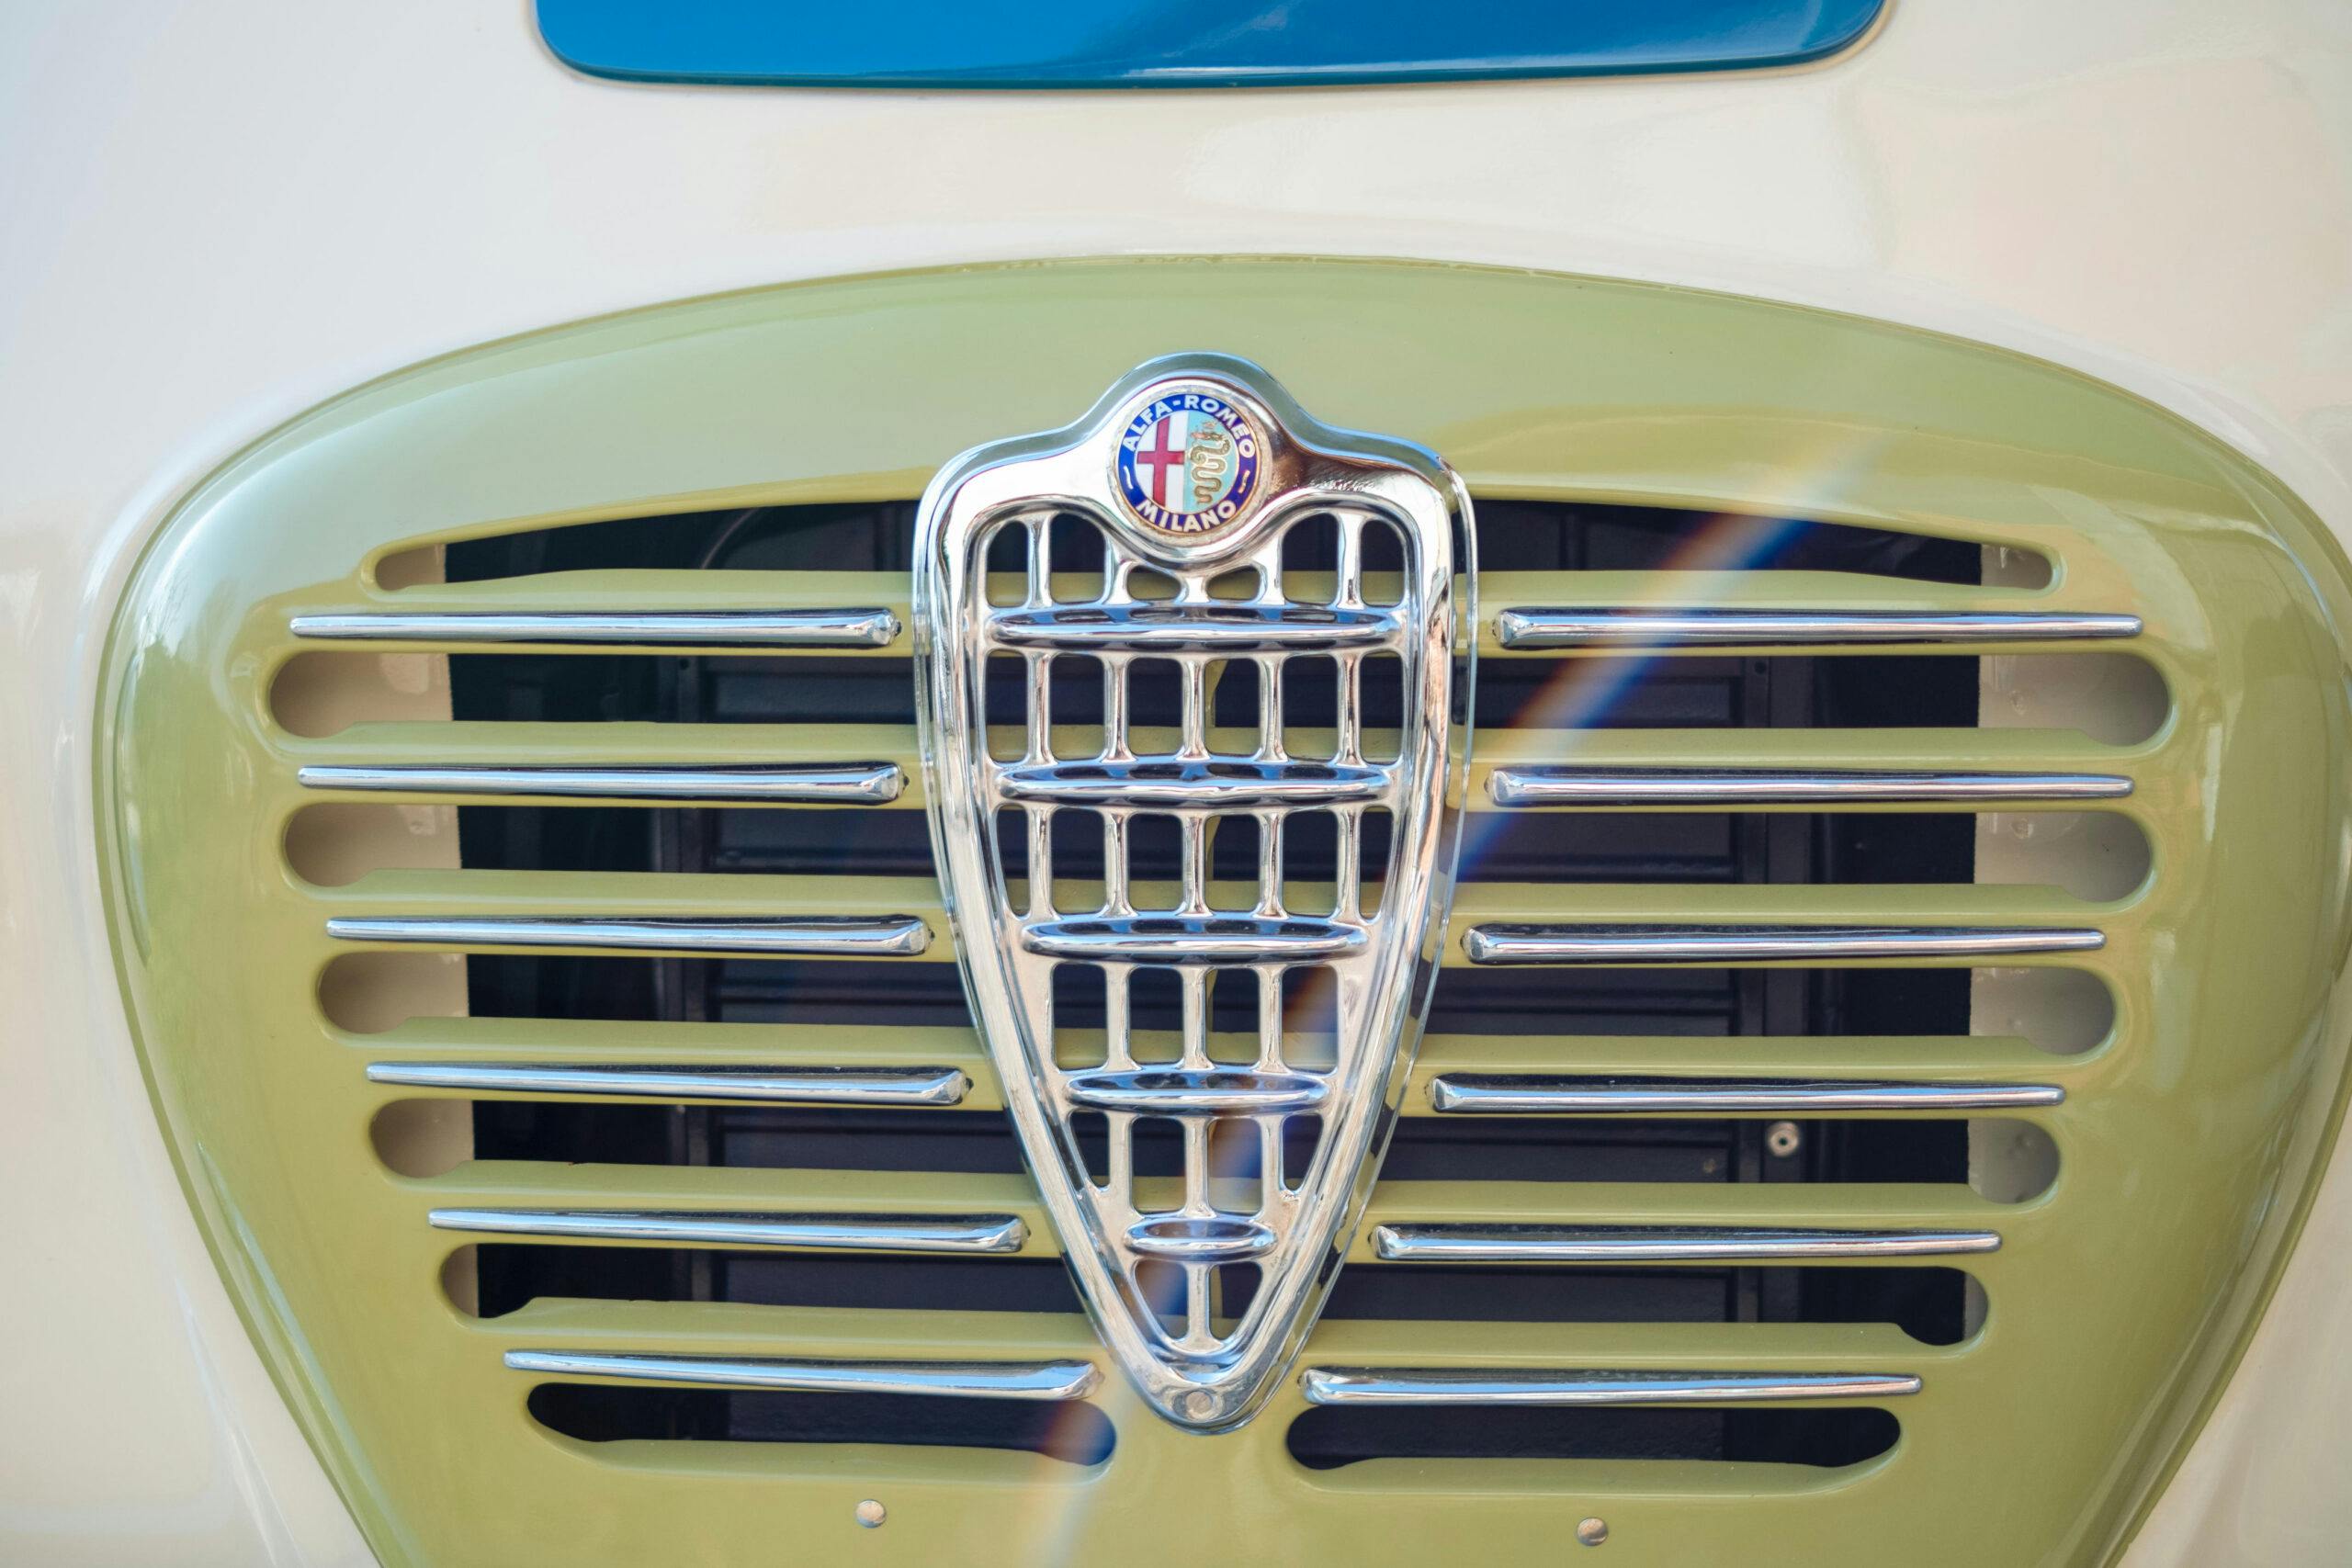 1955 Alfa Romeo T10 Autotutto Romeo Campervan grille